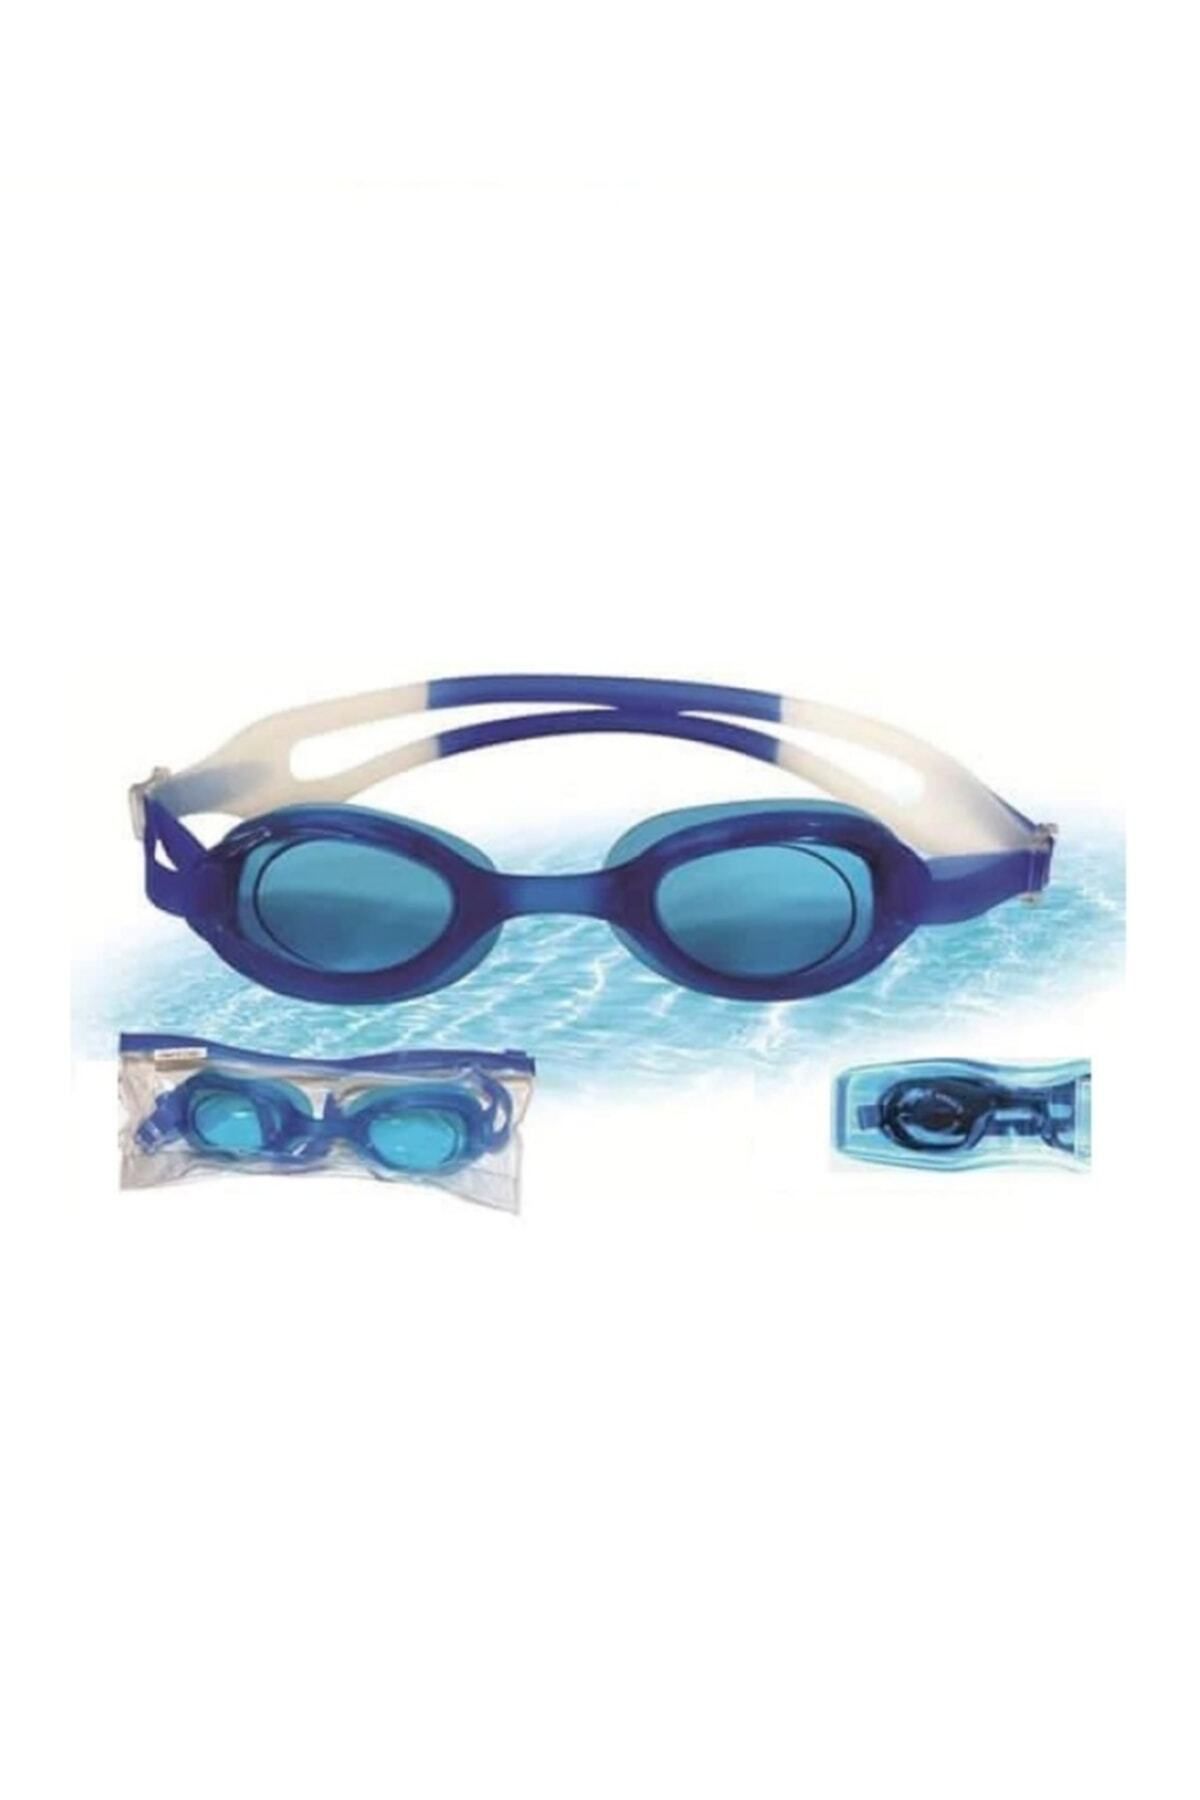 Bakio Profesyonel Deniz Havuz Dalış Yüzücü Gözlüğü Unisex Antrenman Gözlüğü Safir Cam